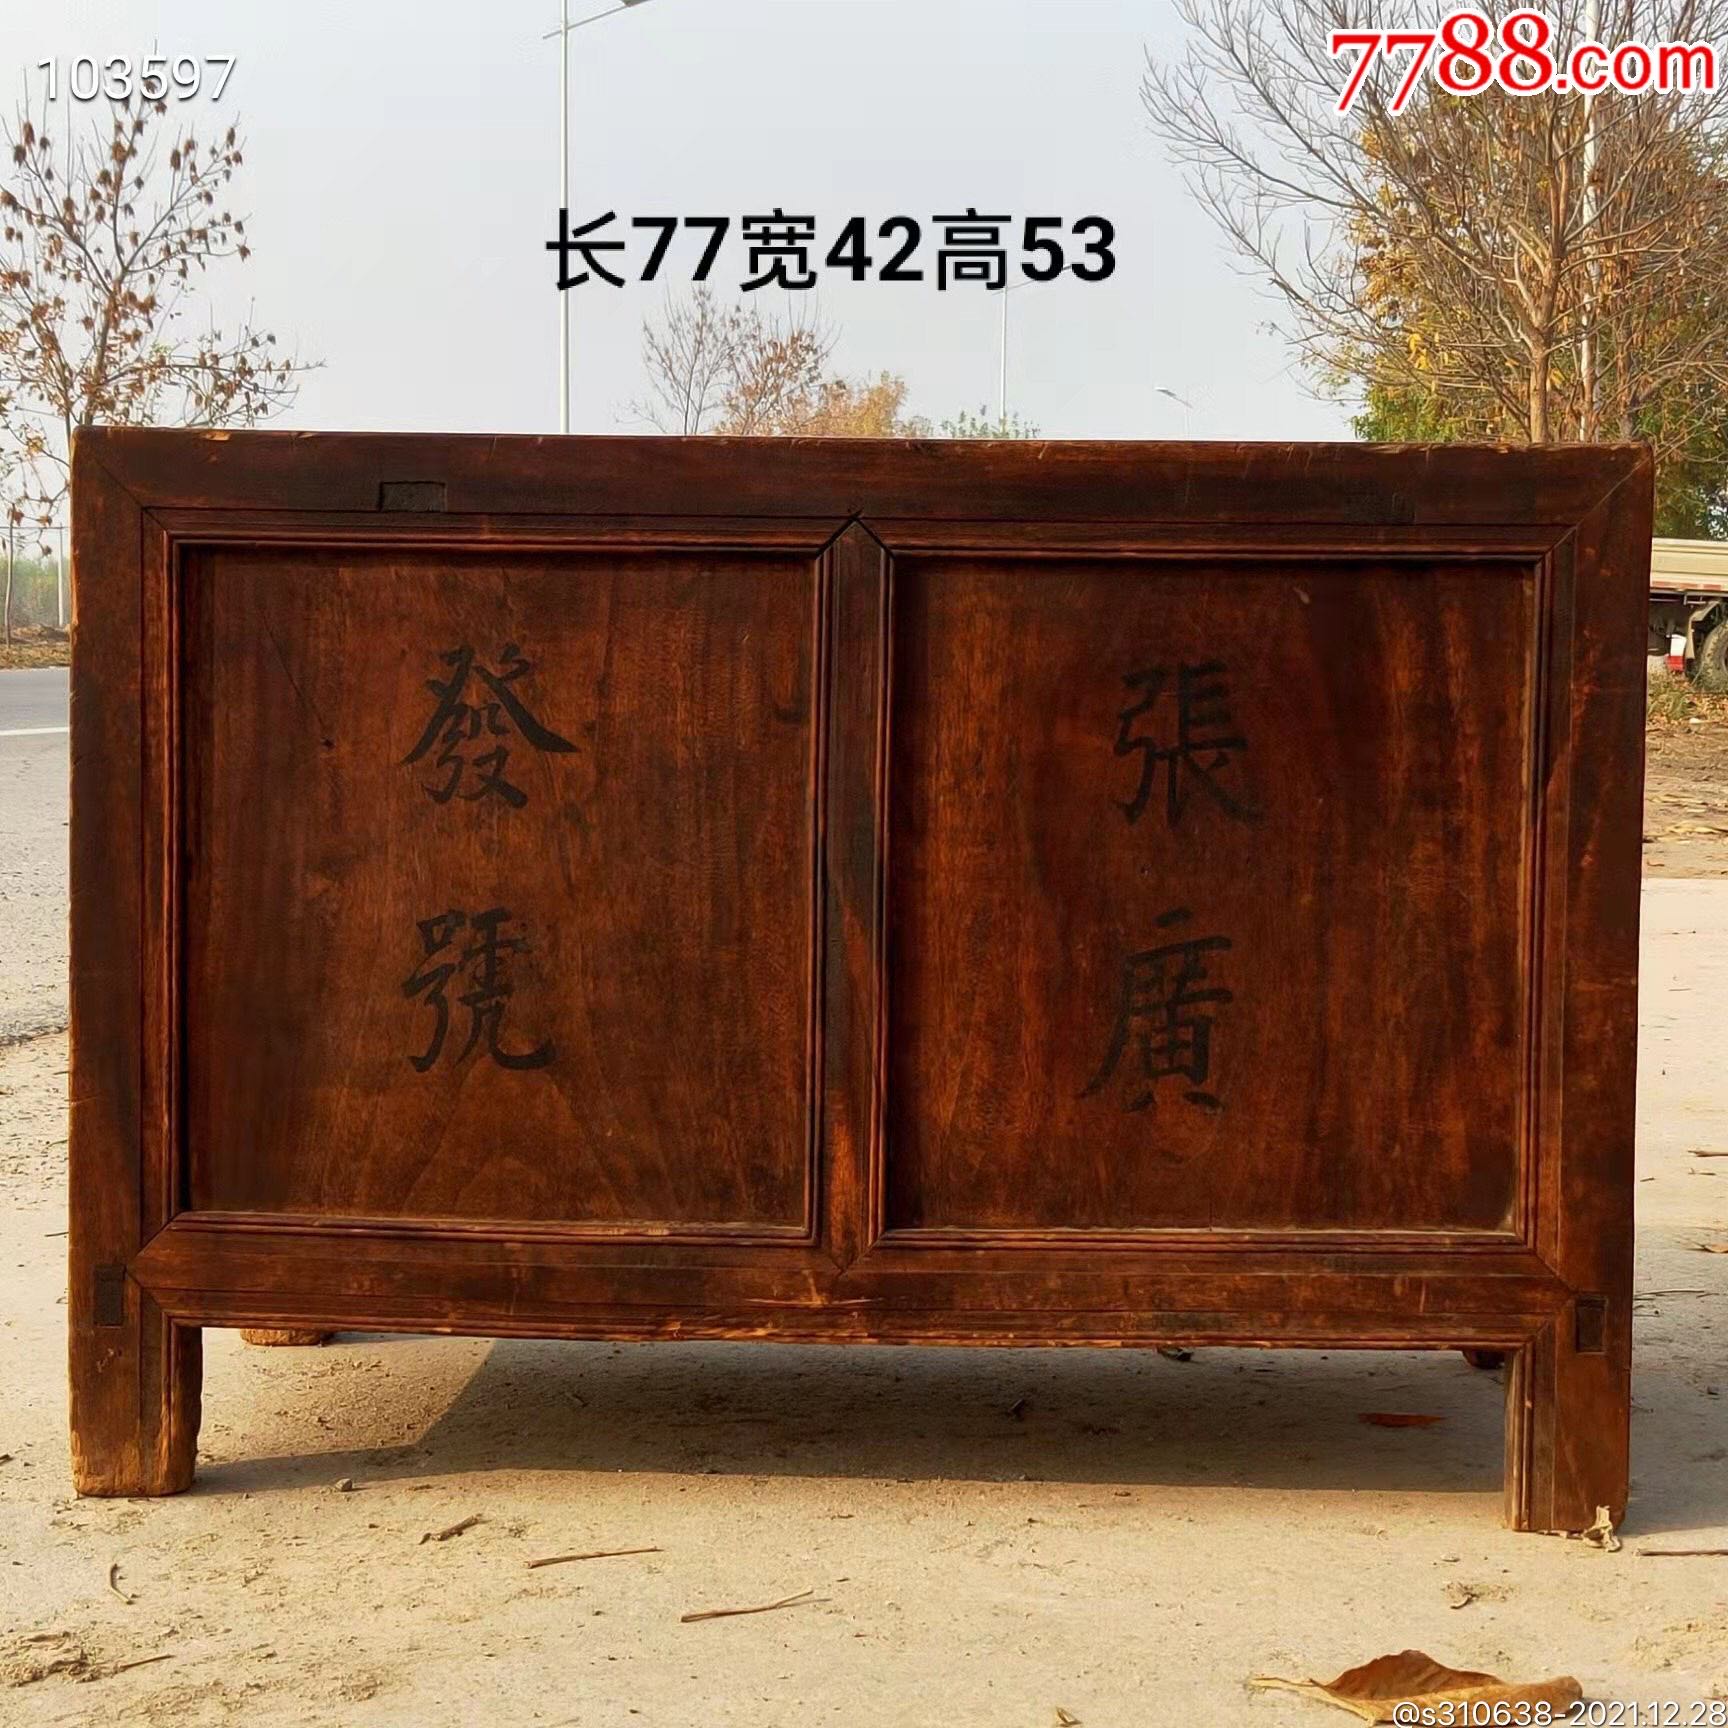 古代老钱柜-价格:1300.0000元-1-木柜/木橱 -零售-7788木艺